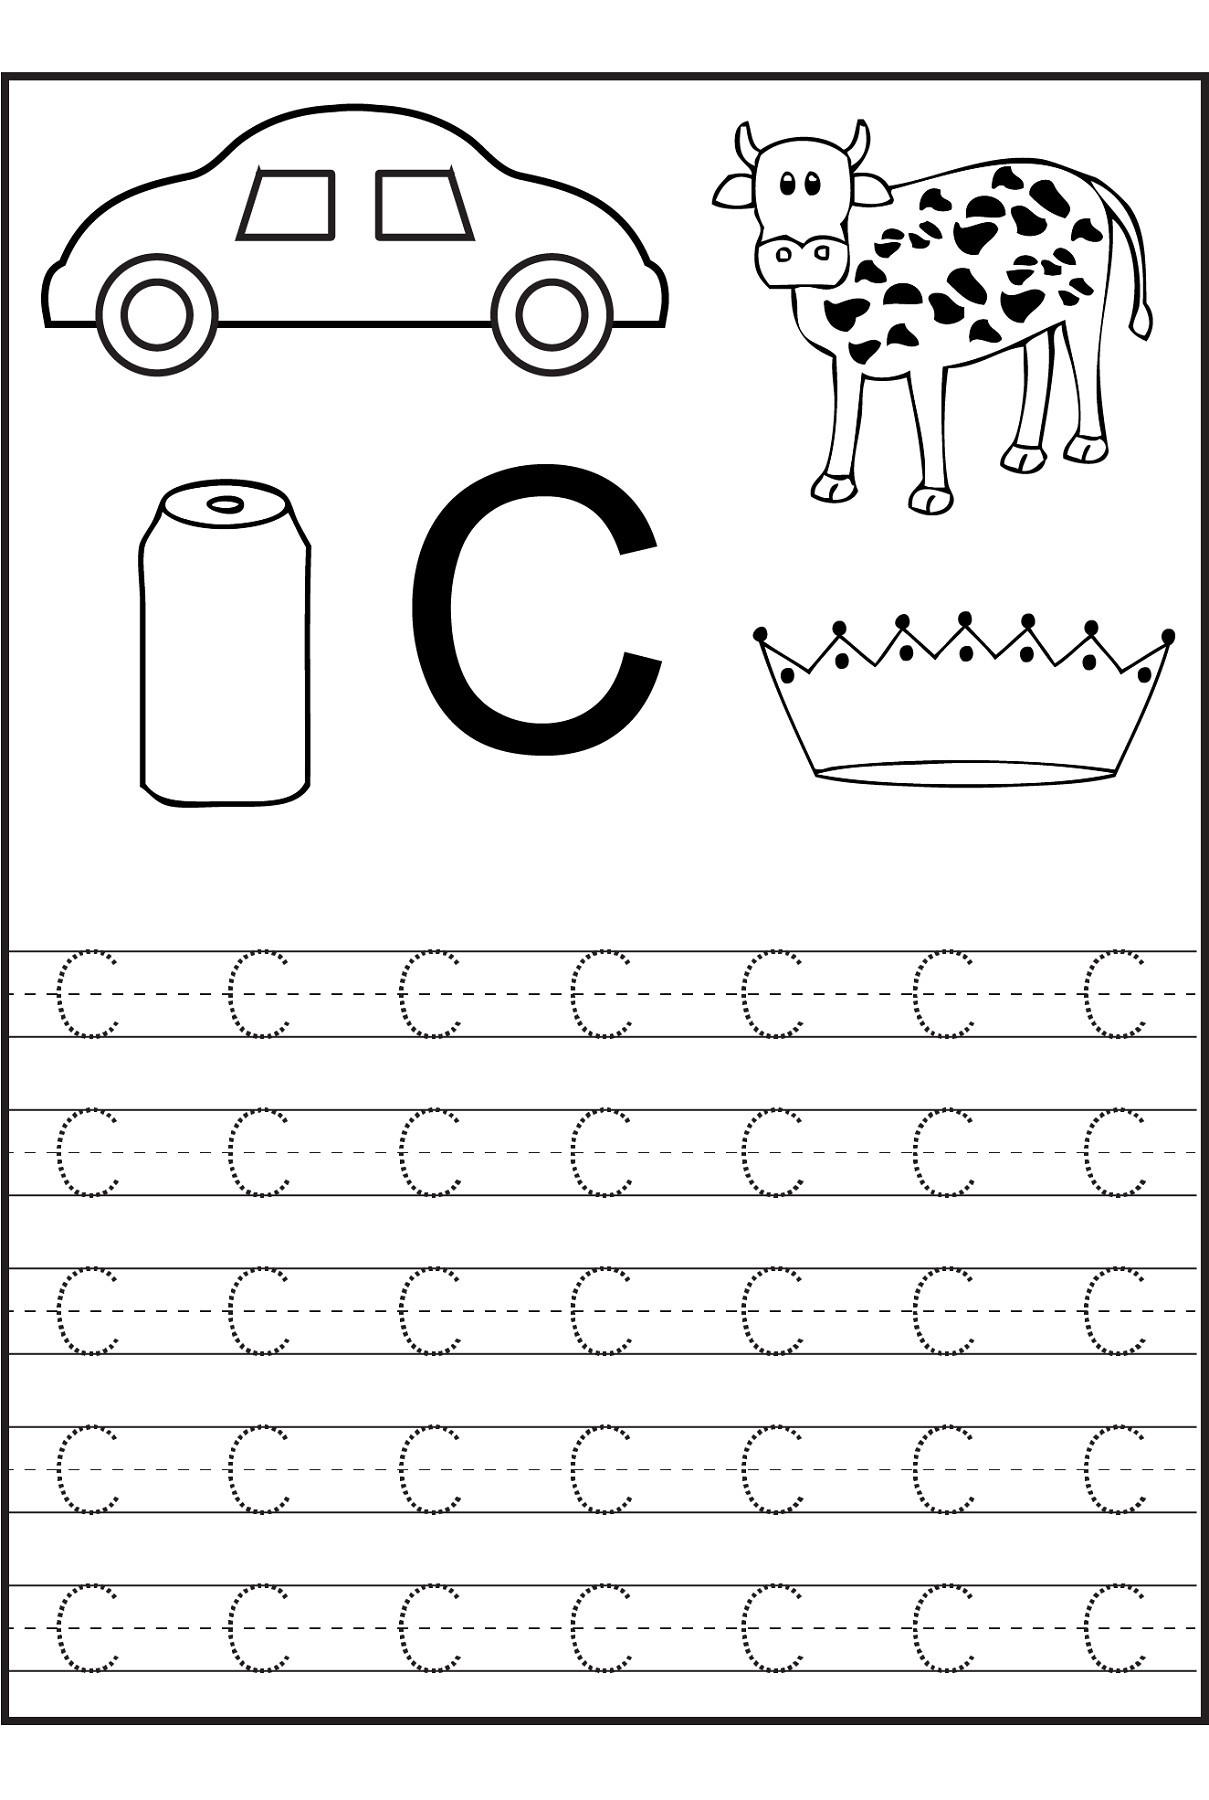 Letter D Worksheet for Preschool 3 Letter D Activities for Preschool Worksheets Worksheets